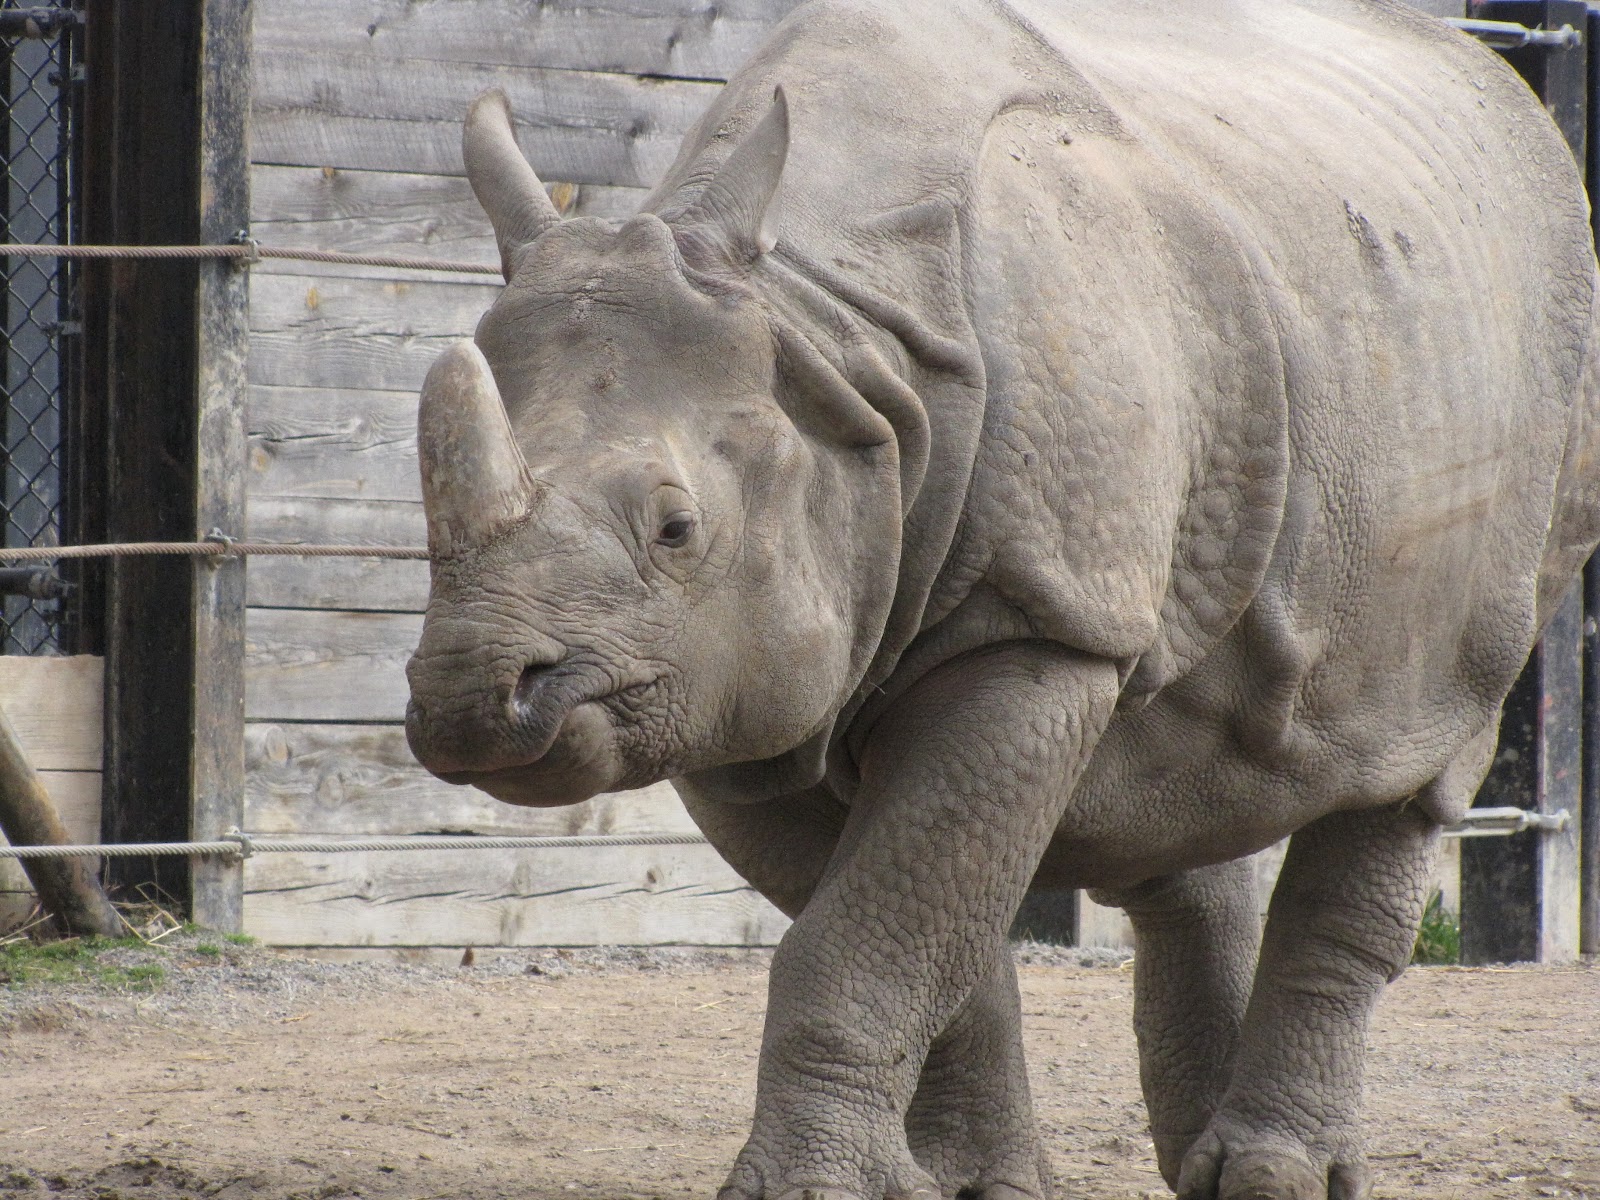 Let's Draw Endangered Species! : ): Rhino, Javan